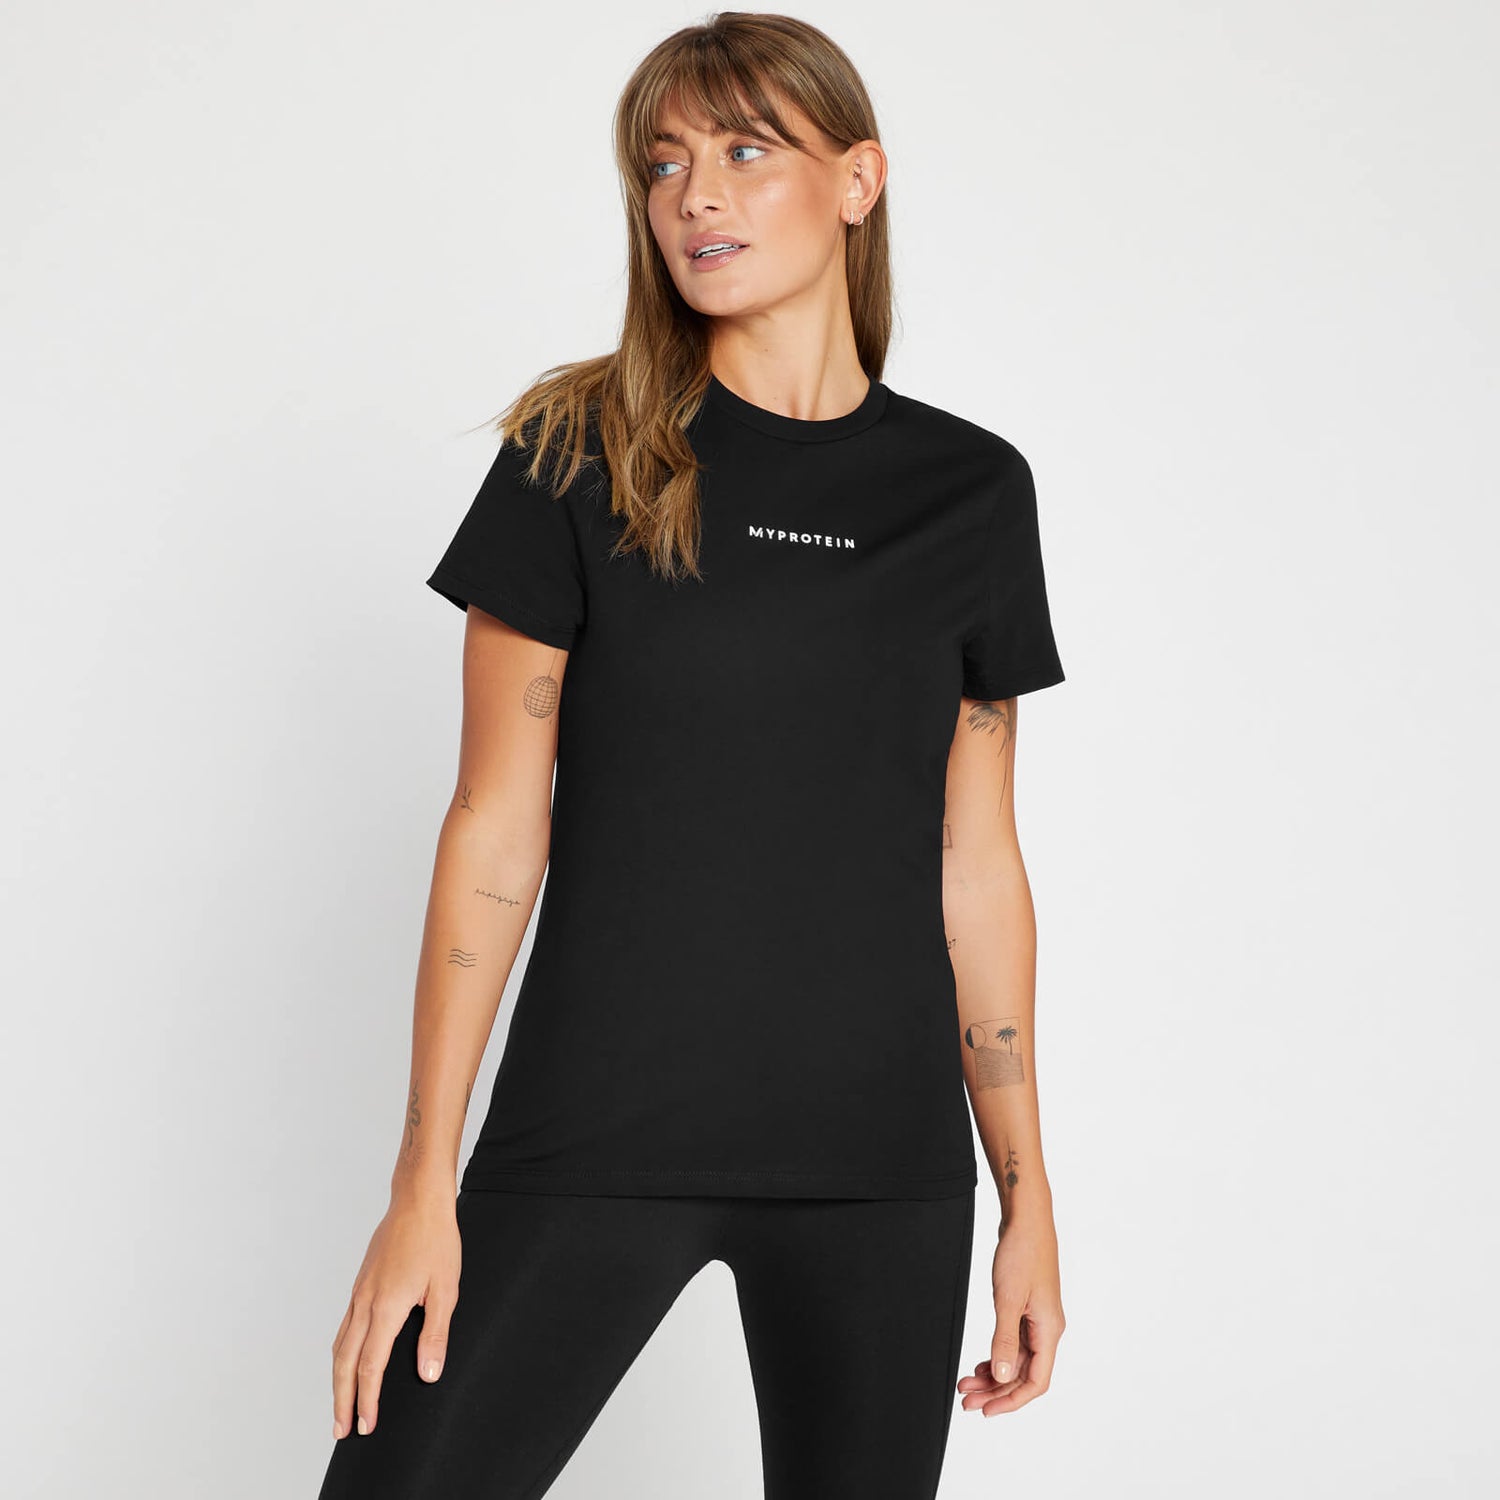 New Originals Contemporary T-Shirt til Kvinder - Sort - XS